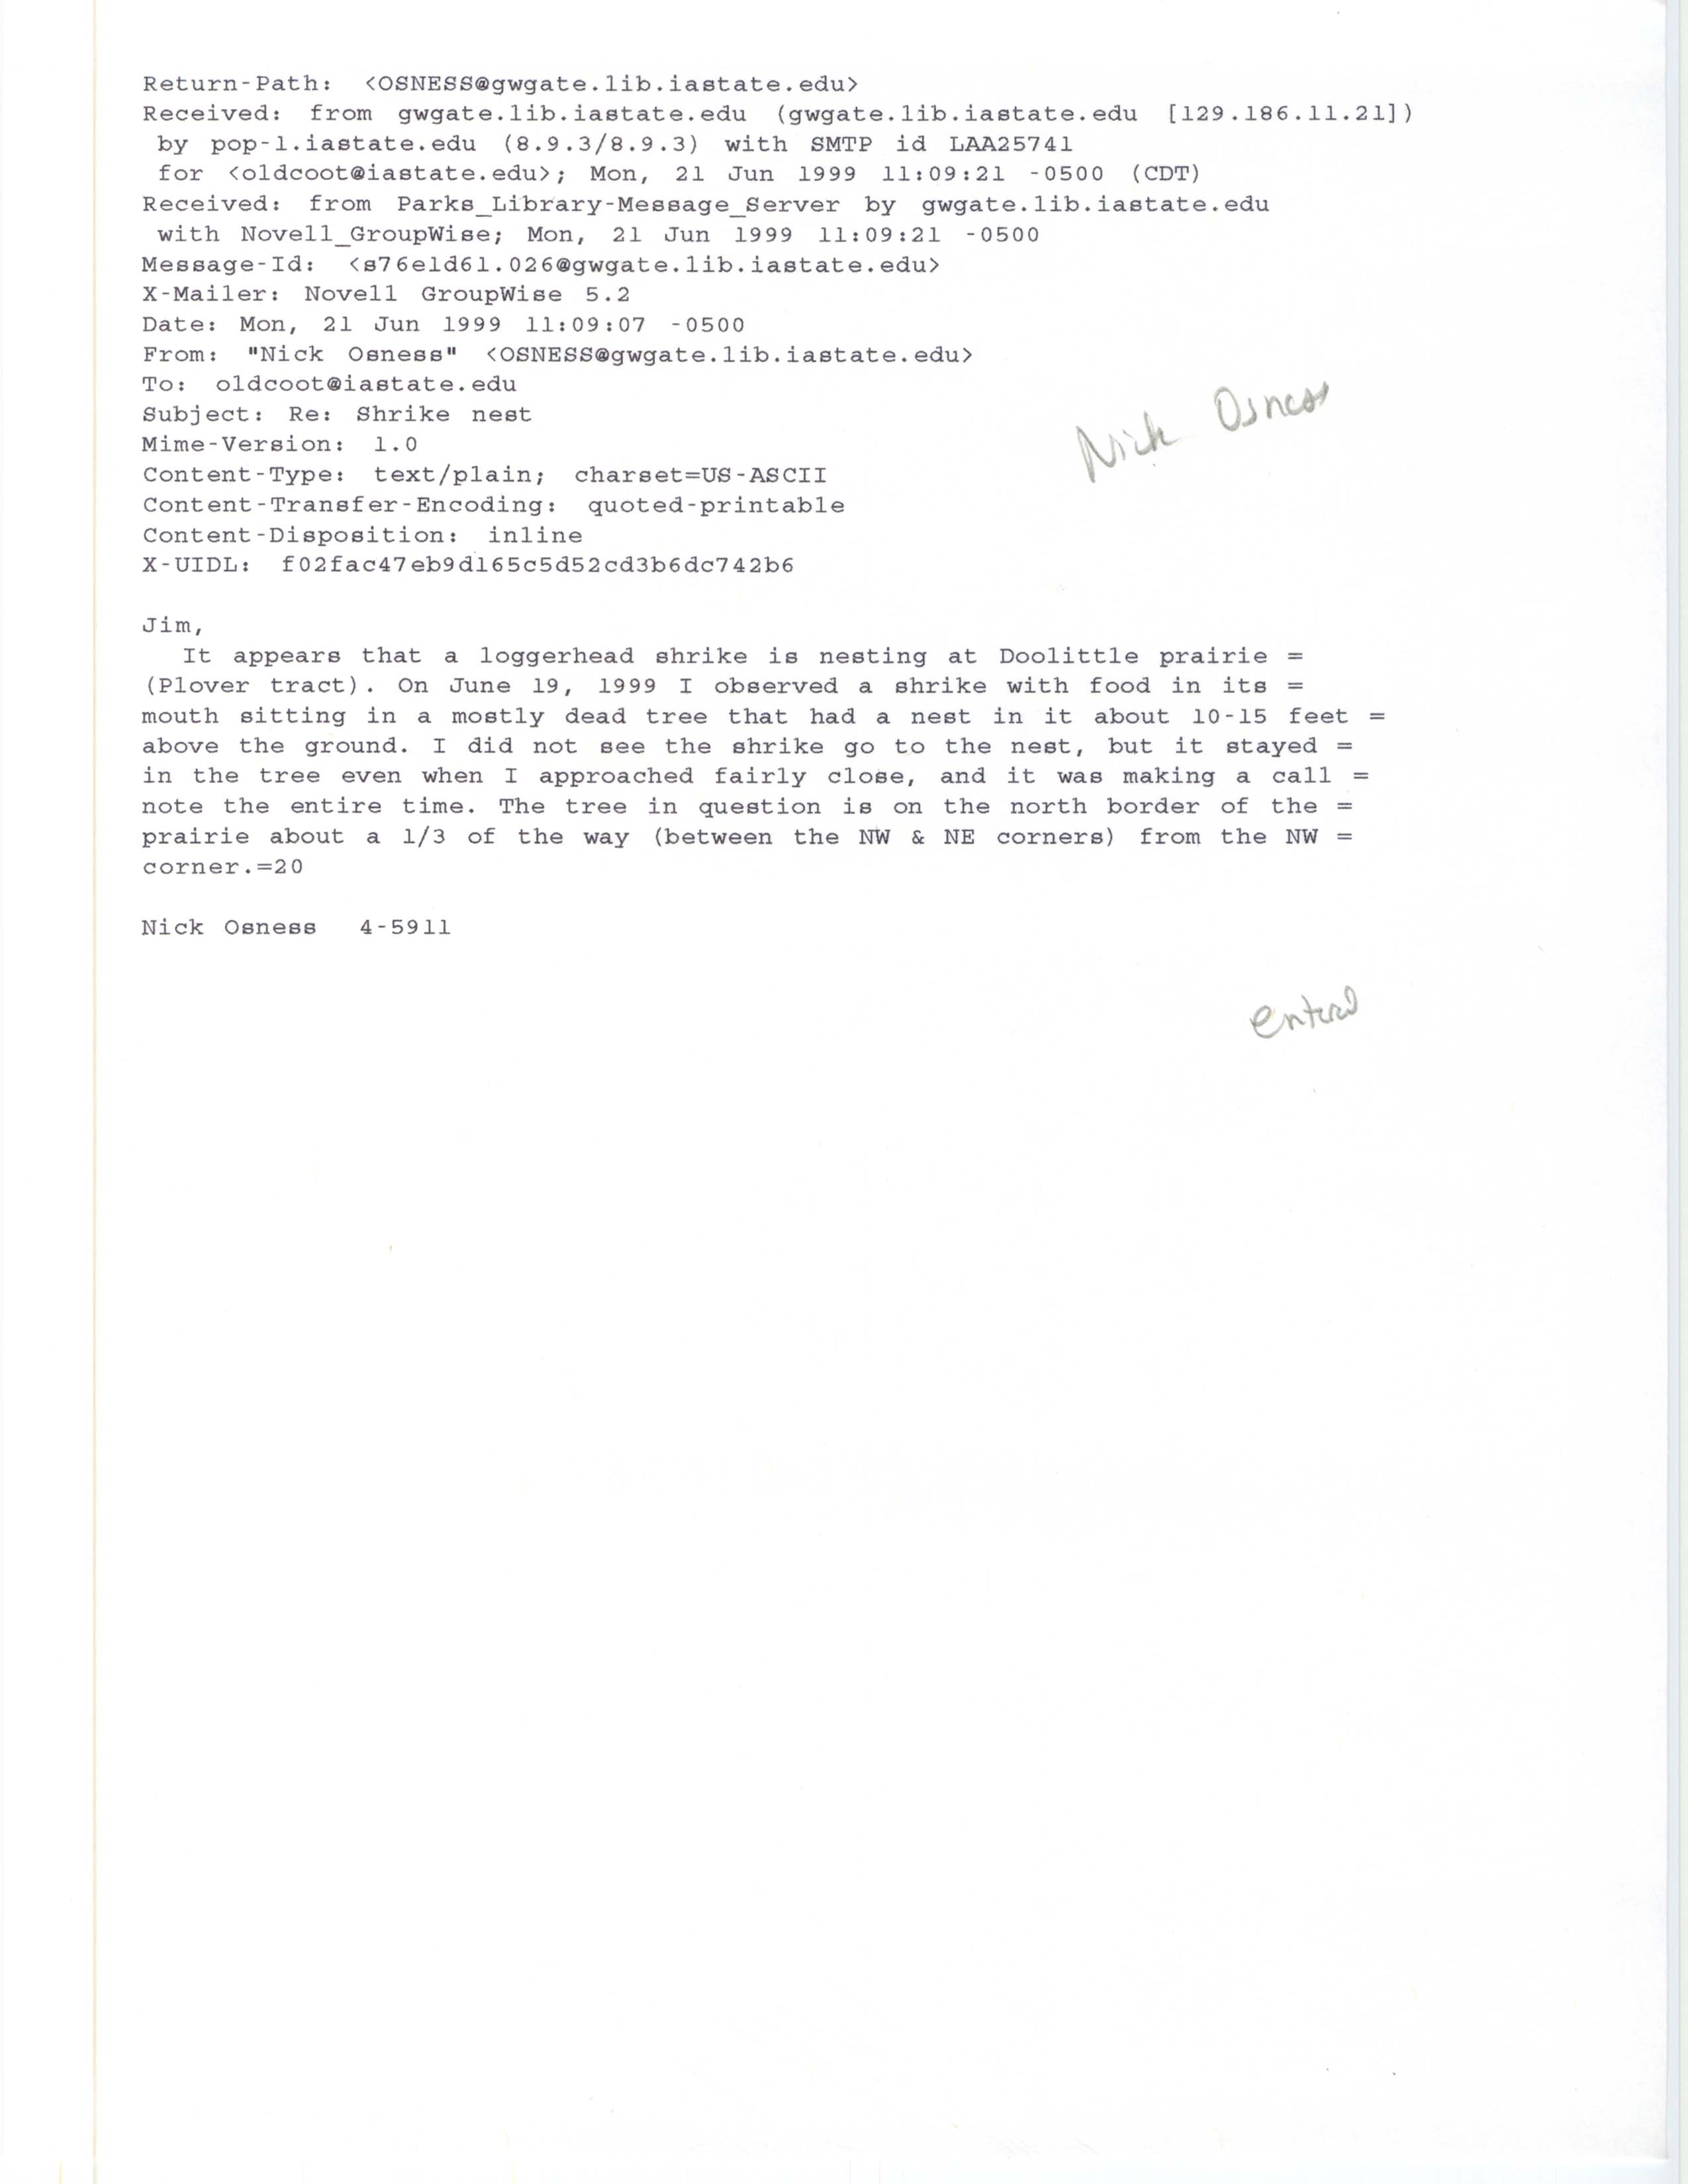 Nick Osness email to Jim Dinsmore regarding Loggerhead Shrike nest, June 21, 1999